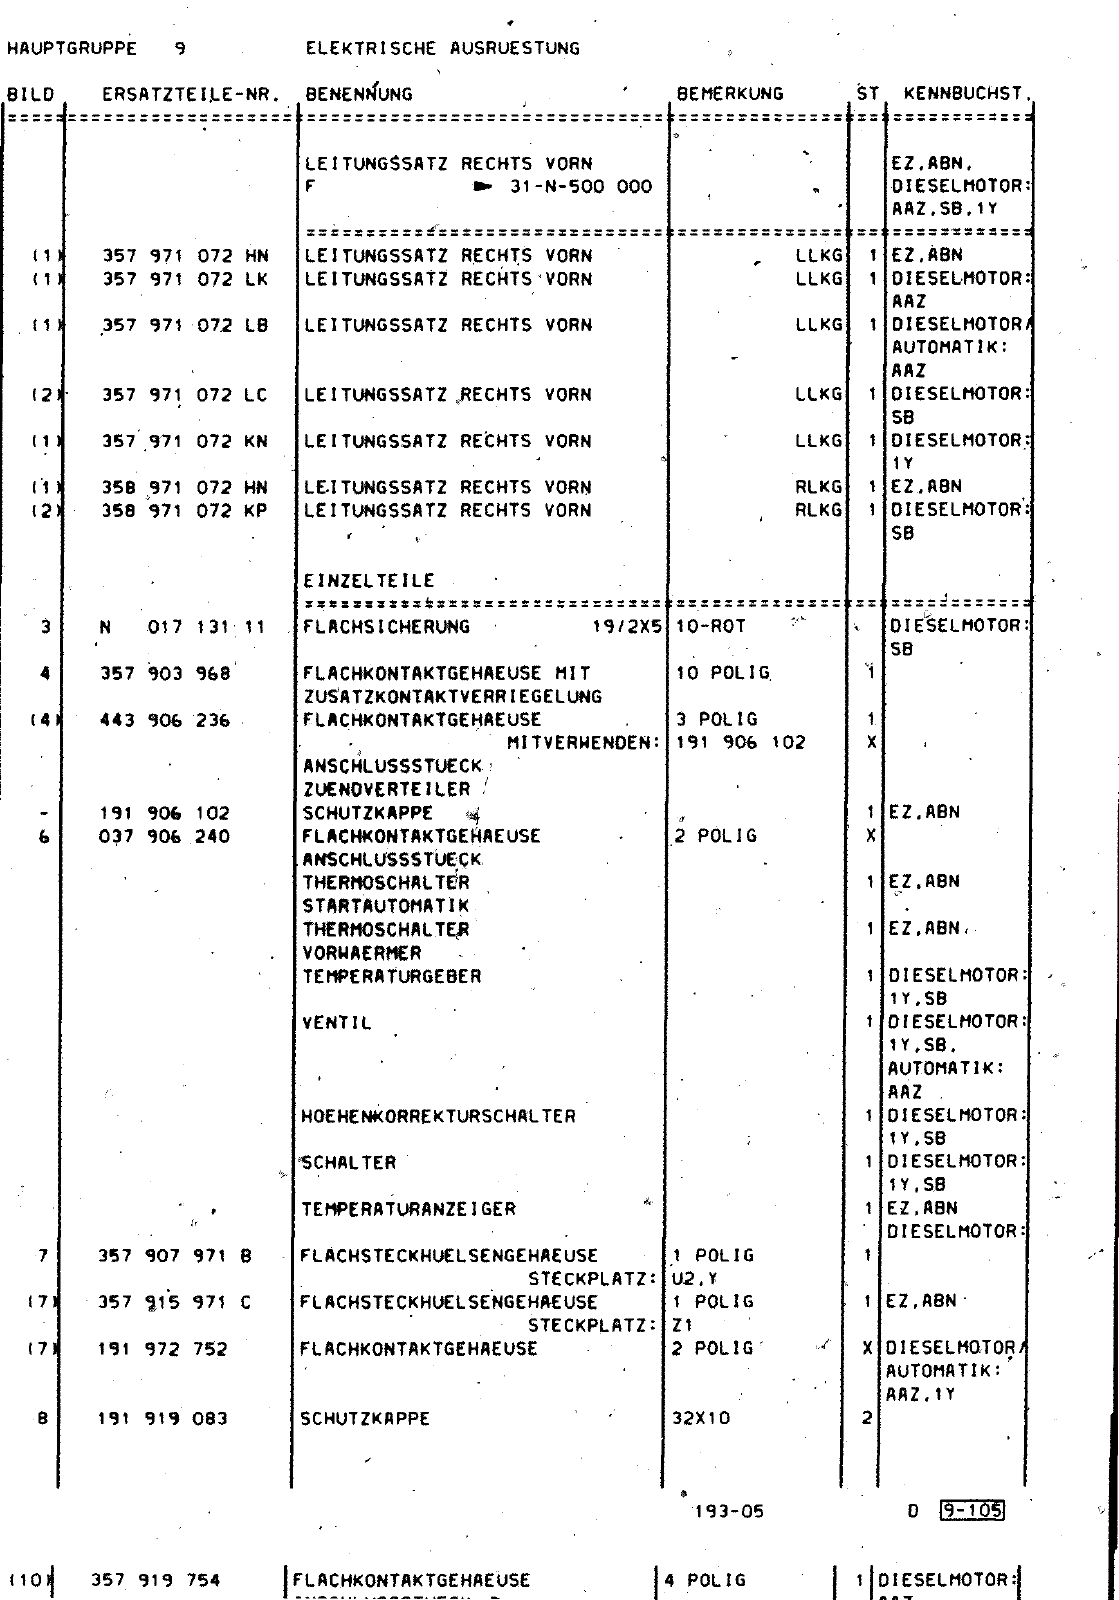 Vorschau Passat Mod 92-93 Seite 1112